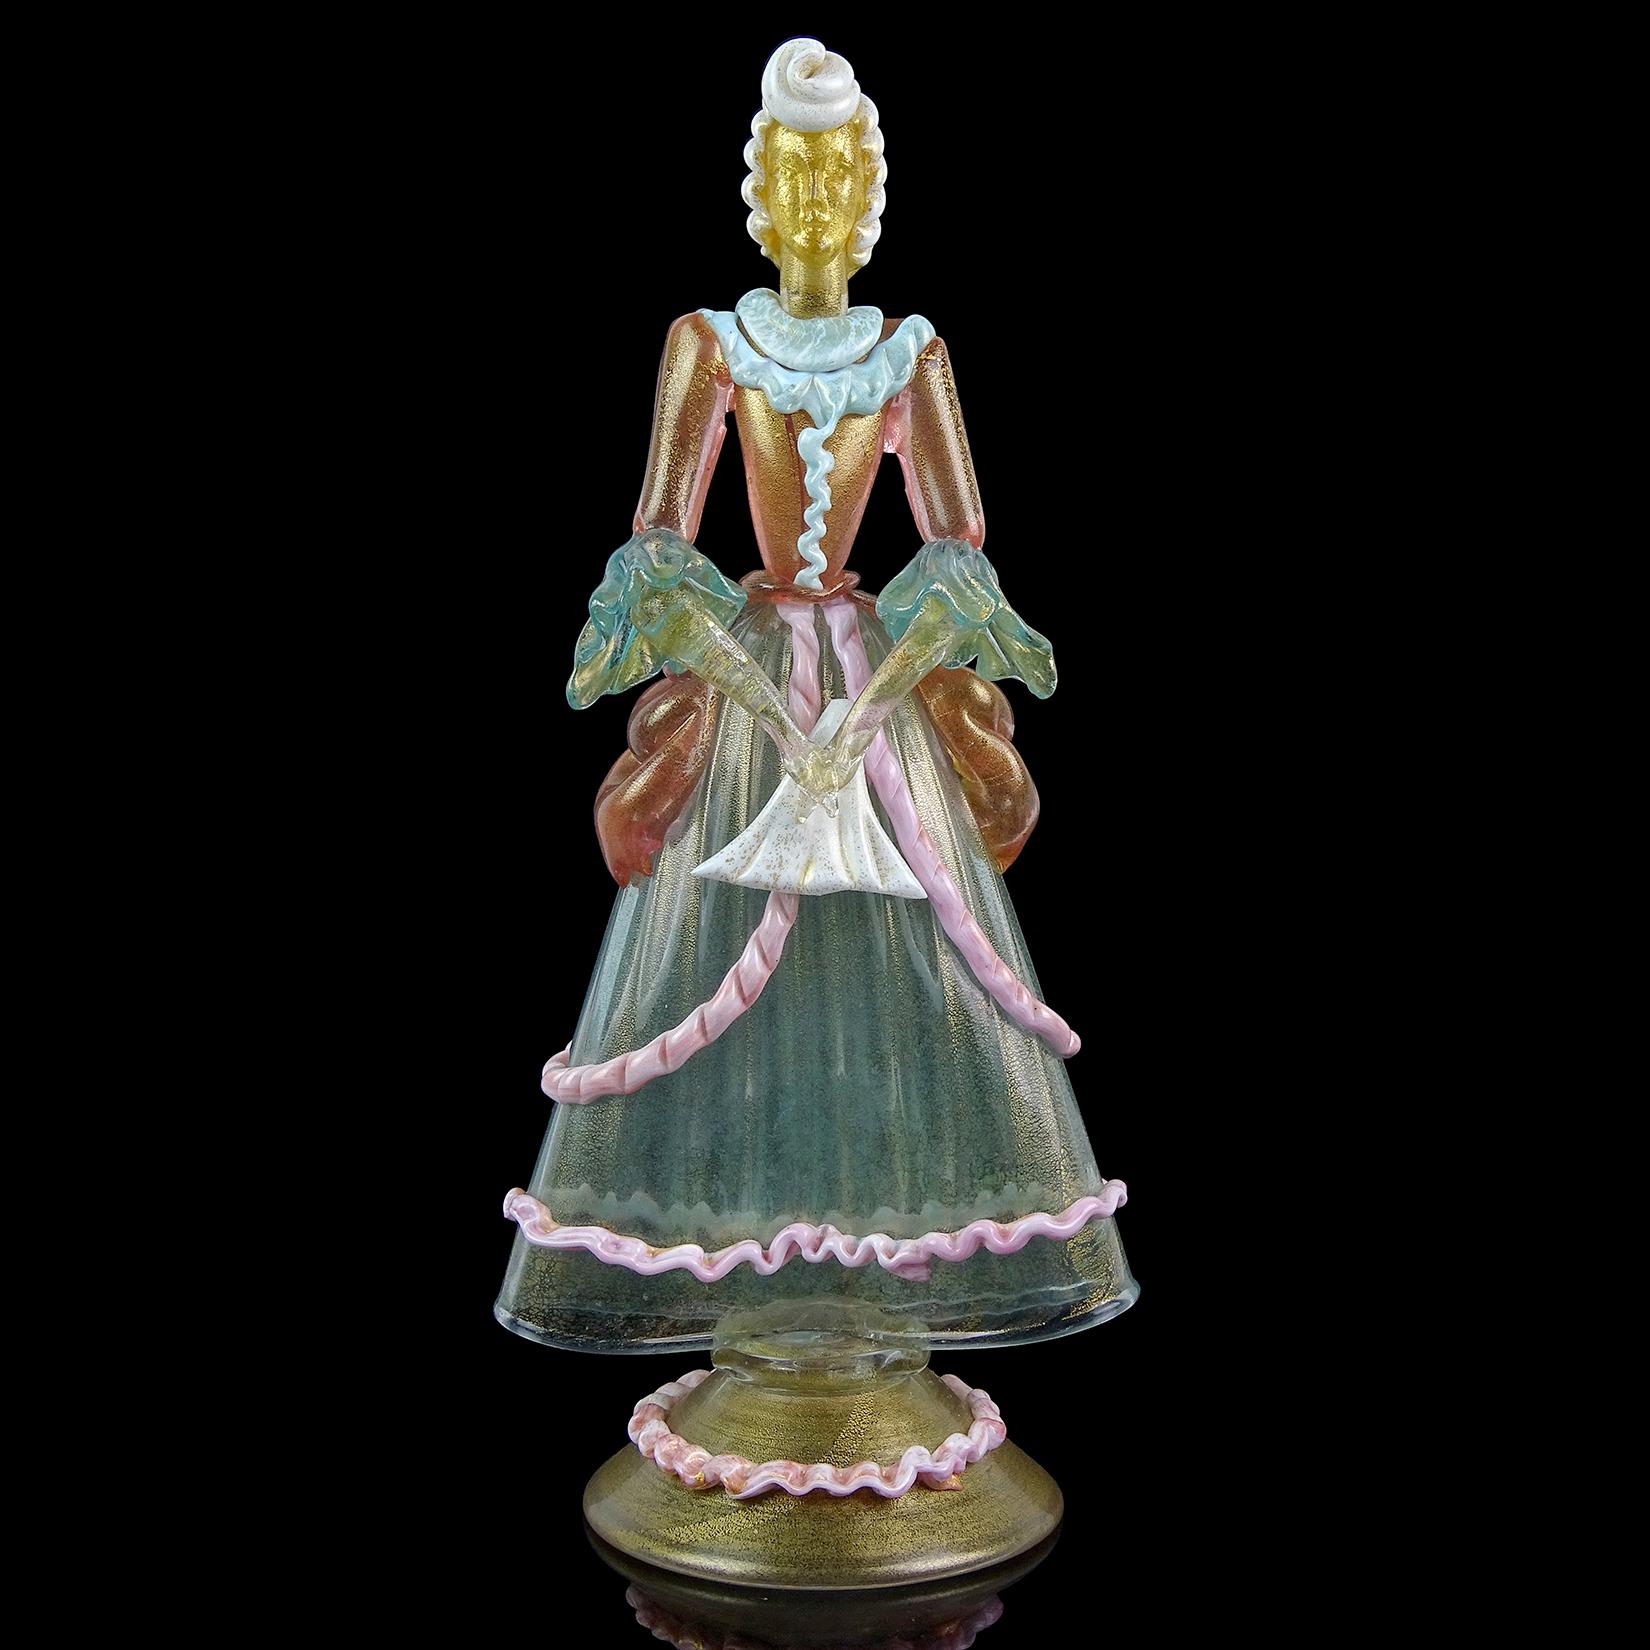 Magnifique grande sculpture de femme victorienne en verre d'art italien soufflé à la main de Murano, de couleur transparente aqua, rose, bleu ciel, blanc et paillettes d'or. En commençant par le haut, elle a une grande coiffure de chignon blanc